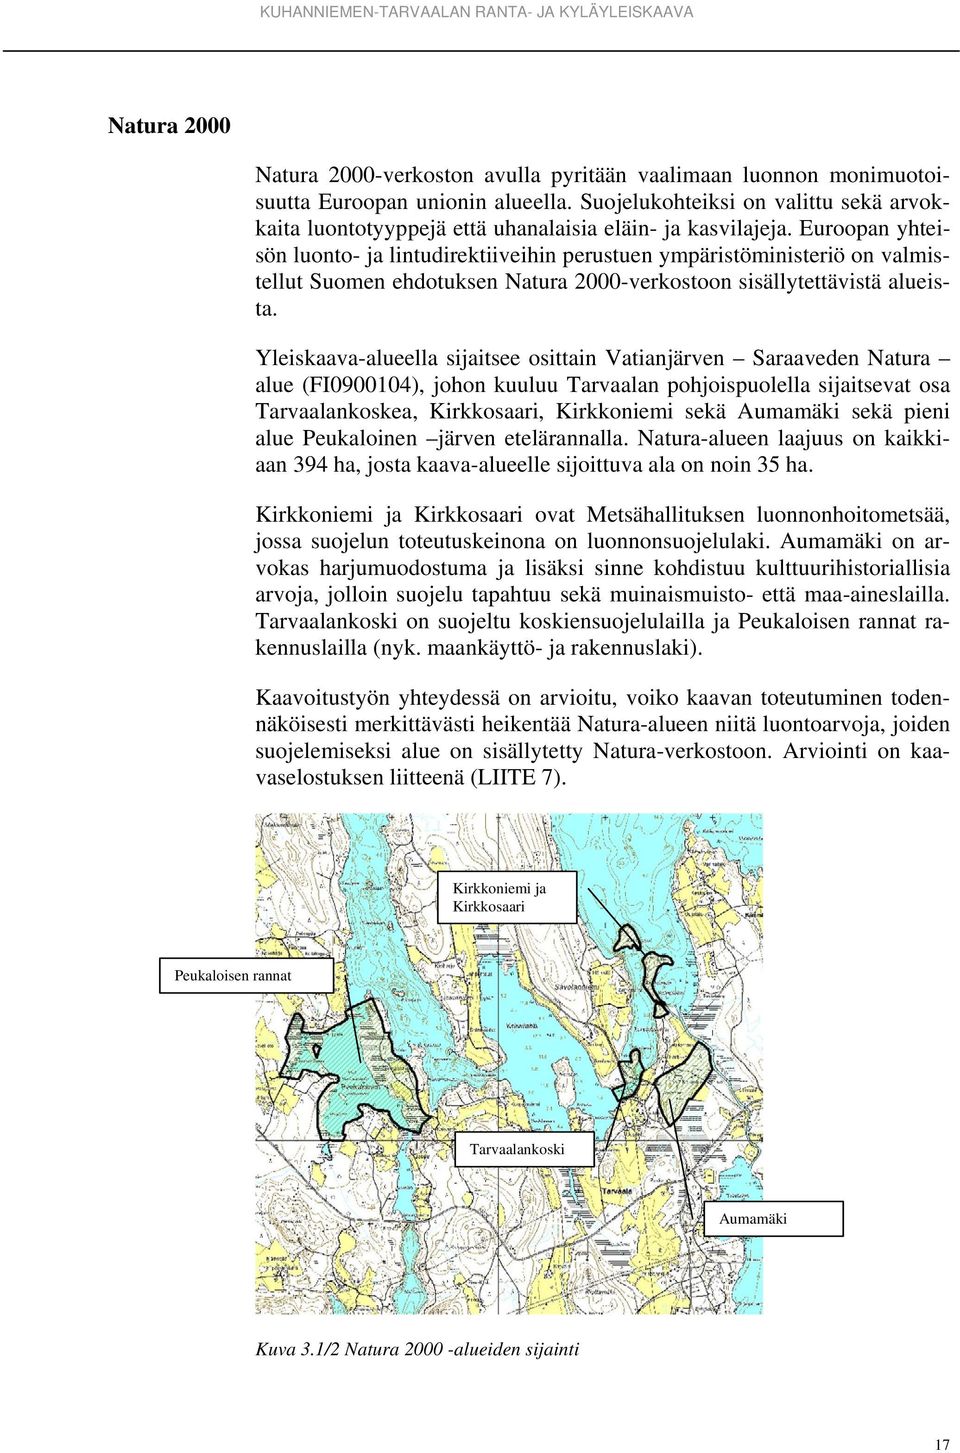 Euroopan yhteisön luonto- ja lintudirektiiveihin perustuen ympäristöministeriö on valmistellut Suomen ehdotuksen Natura 2000-verkostoon sisällytettävistä alueista.